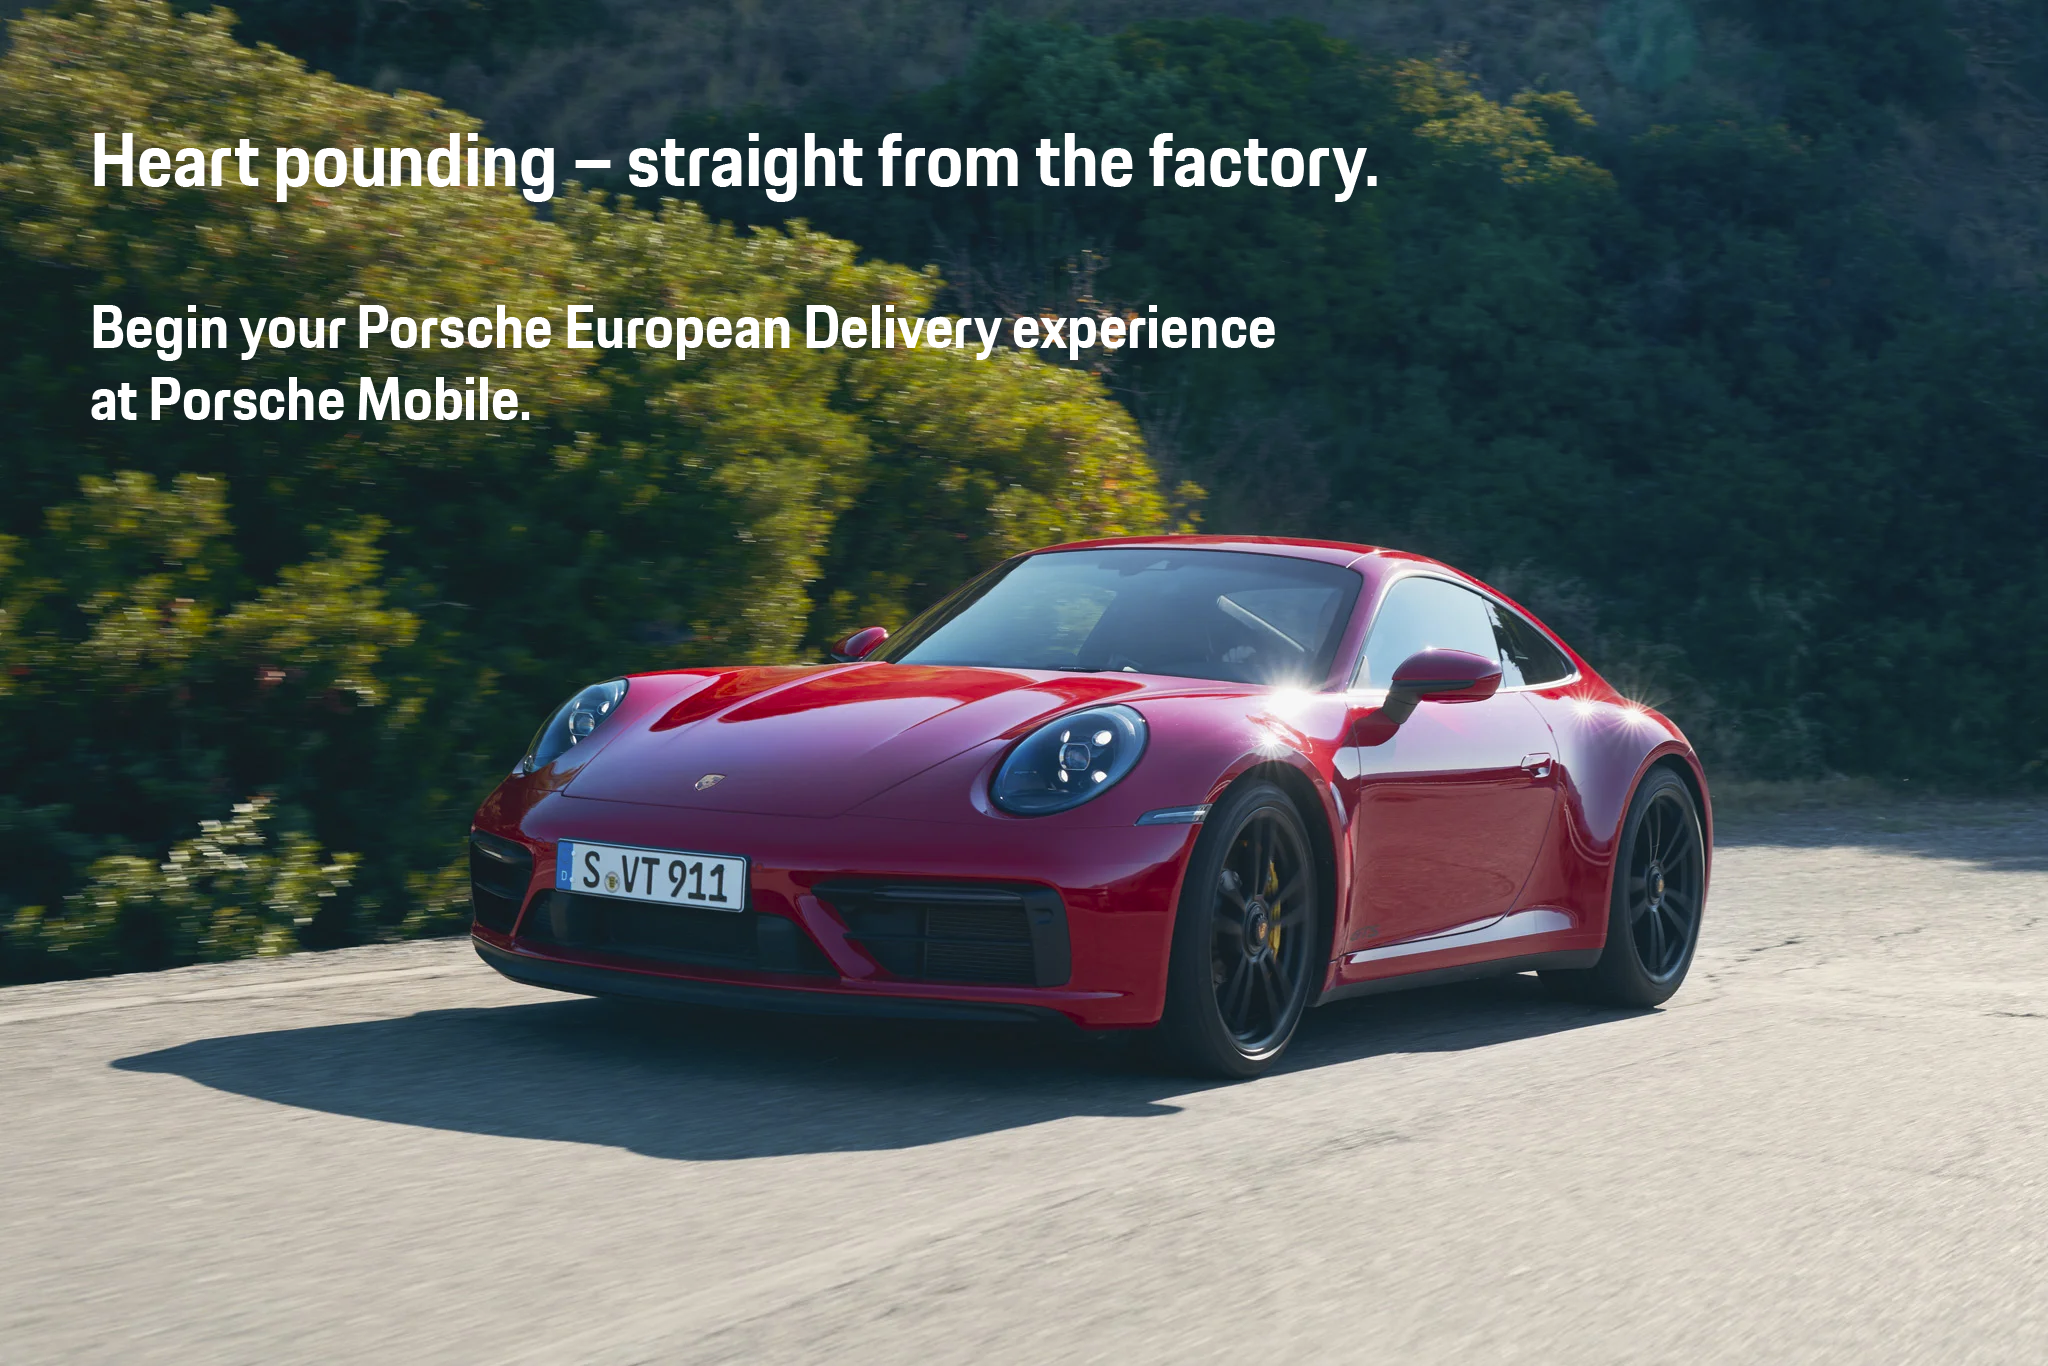 Mobile Porsche European Delivery